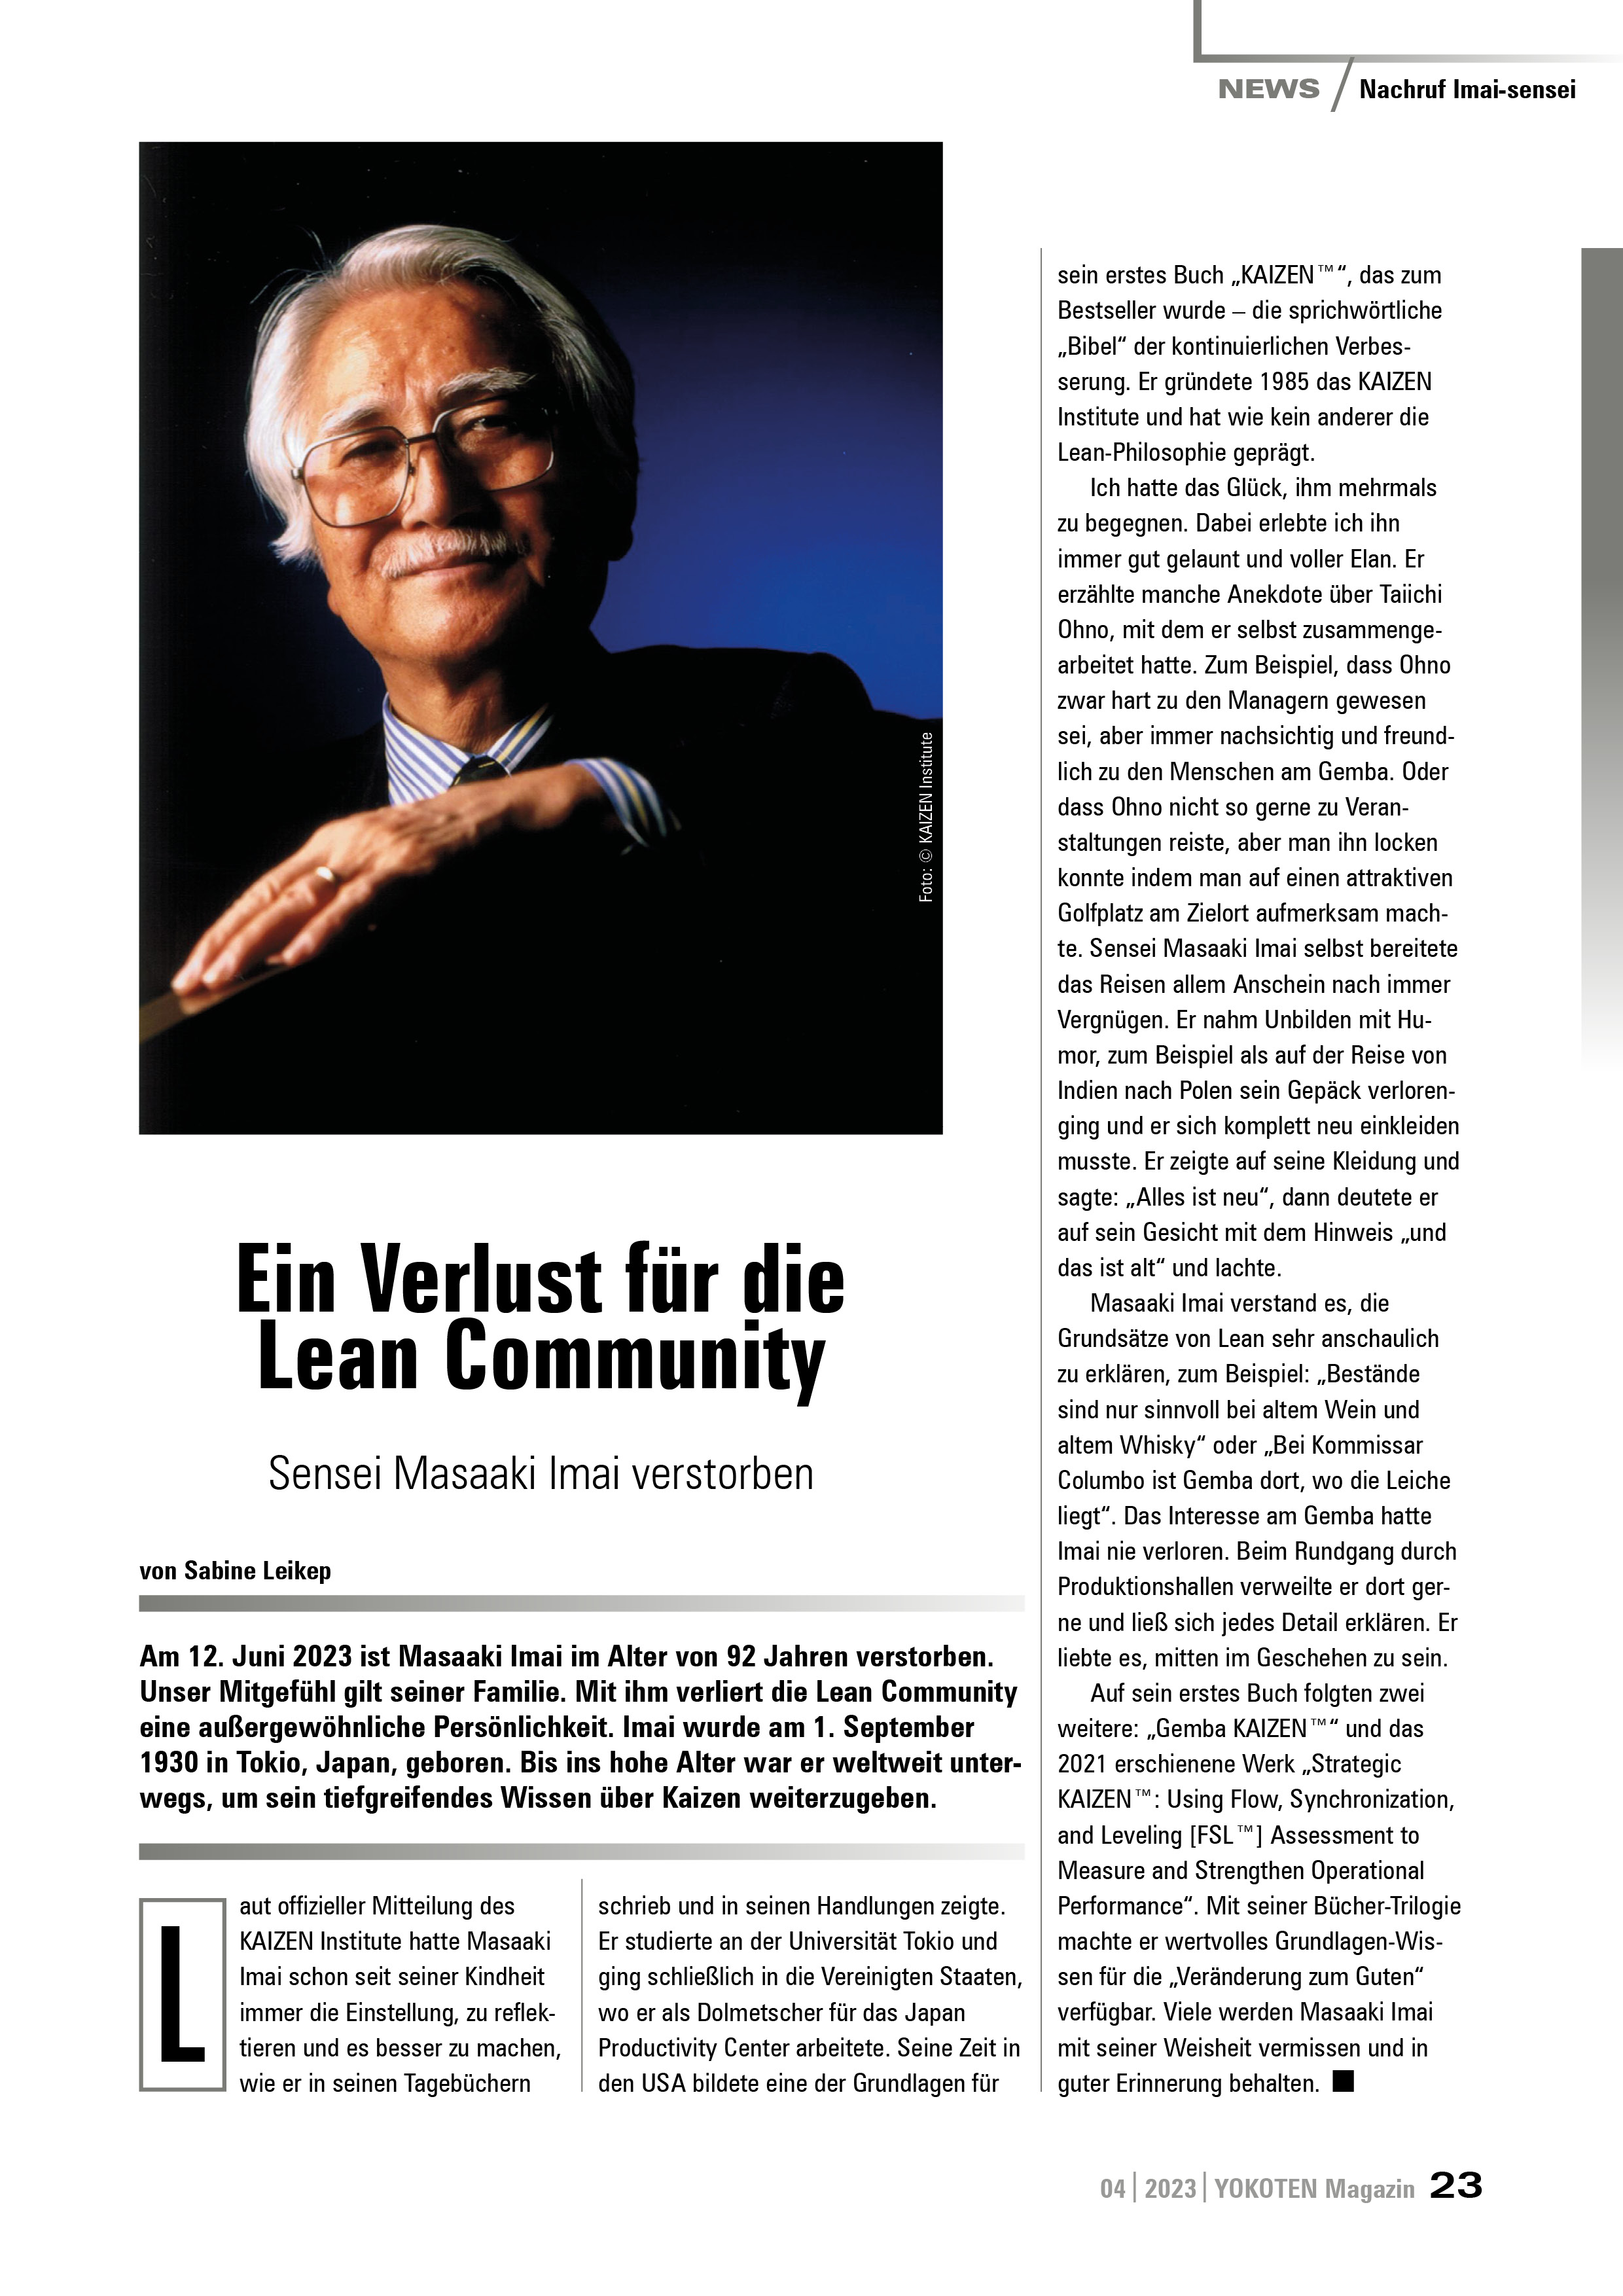 Ein Verlust für die Lean Community - Artikel aus Fachmagazin YOKOTEN 2023-04